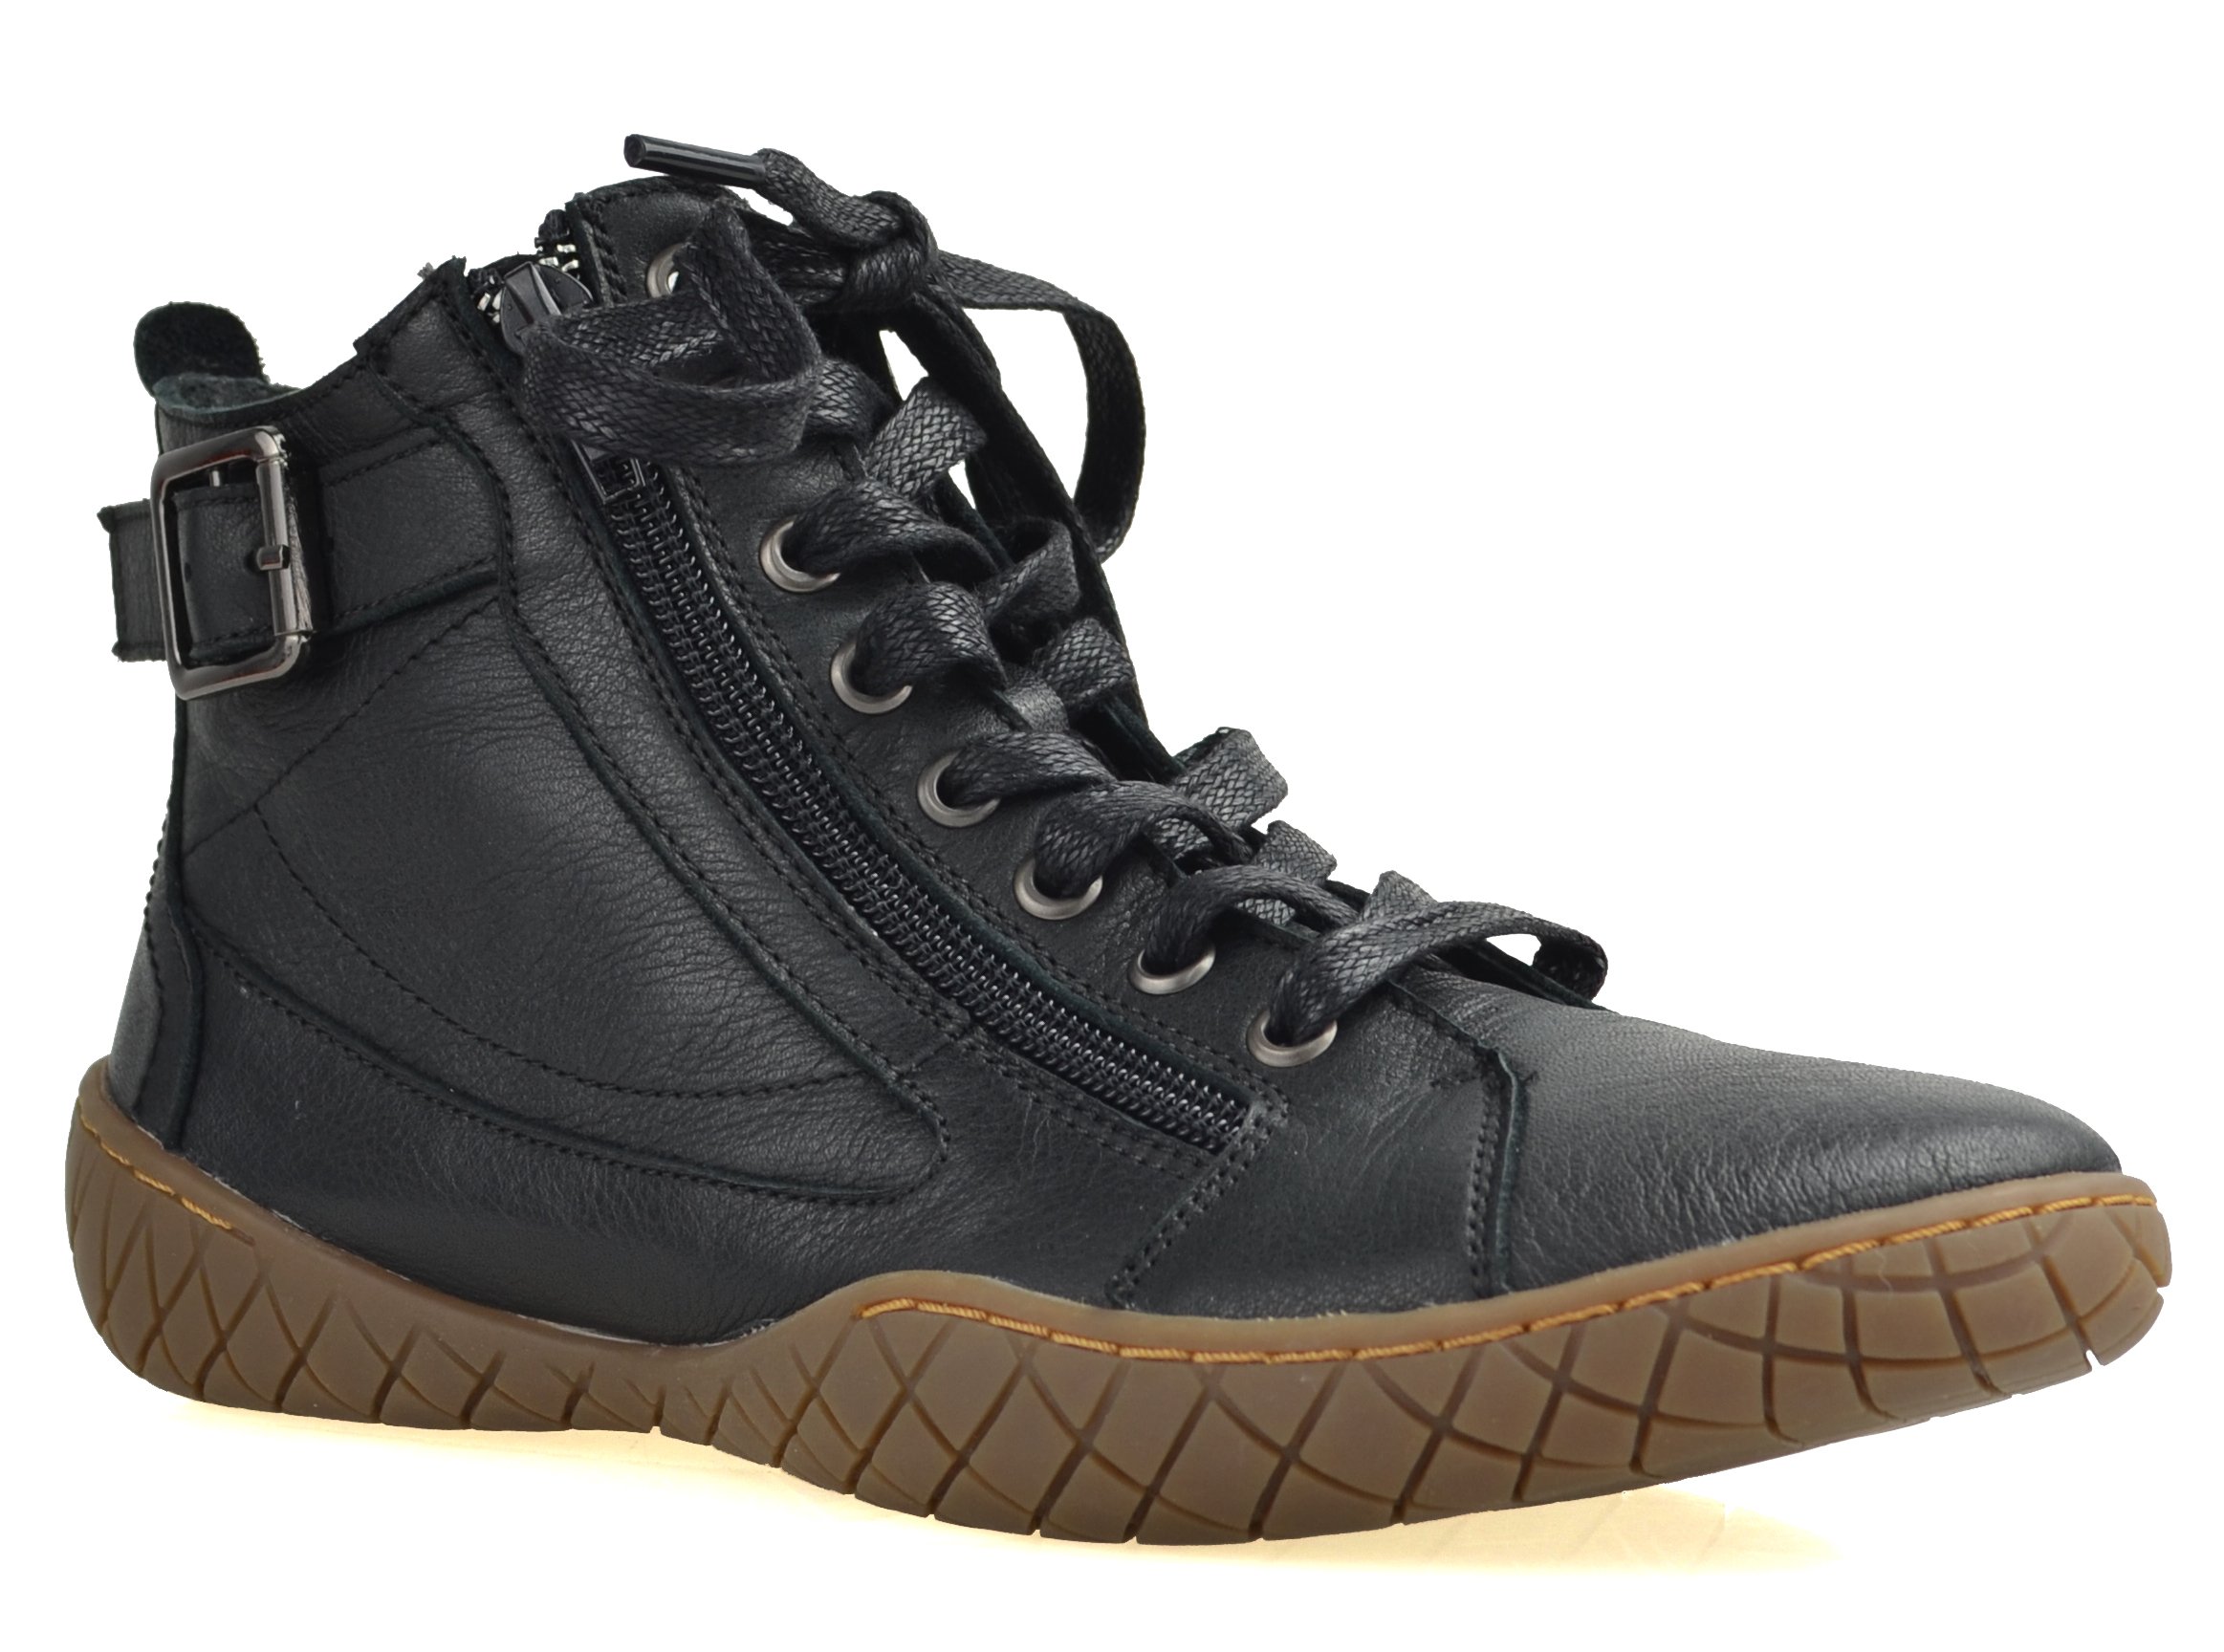 KARINA-BLACK - Traffic Footwear Women Shoes Collection - Boston Babe ...